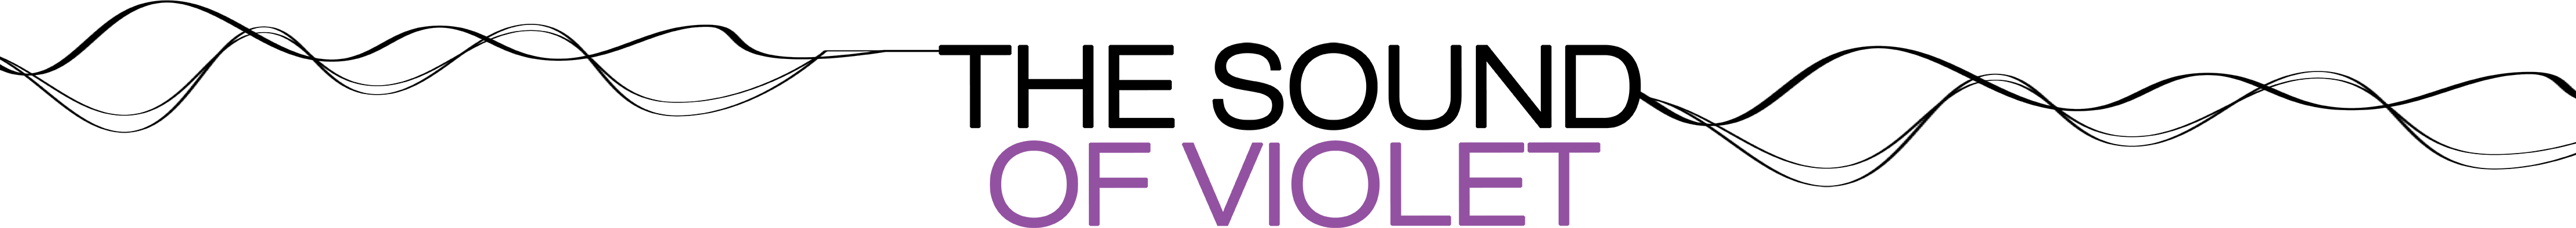 The Sound of Violet Logo